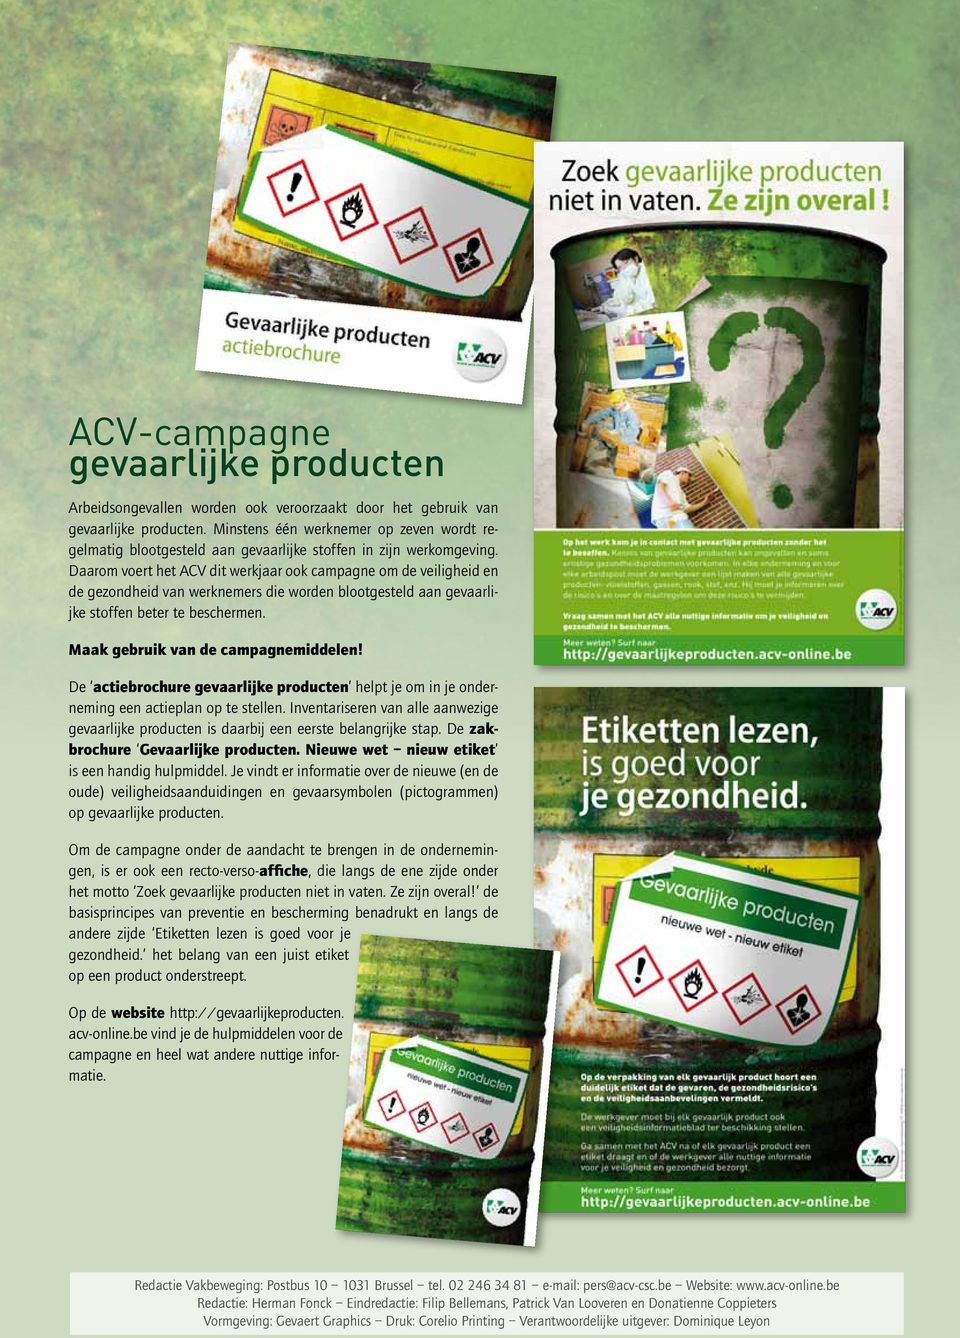 Daarom voert het ACV dit werkjaar ook campagne om de veiligheid en de gezondheid van werknemers die worden blootgesteld aan gevaarlijke stoffen beter te beschermen.